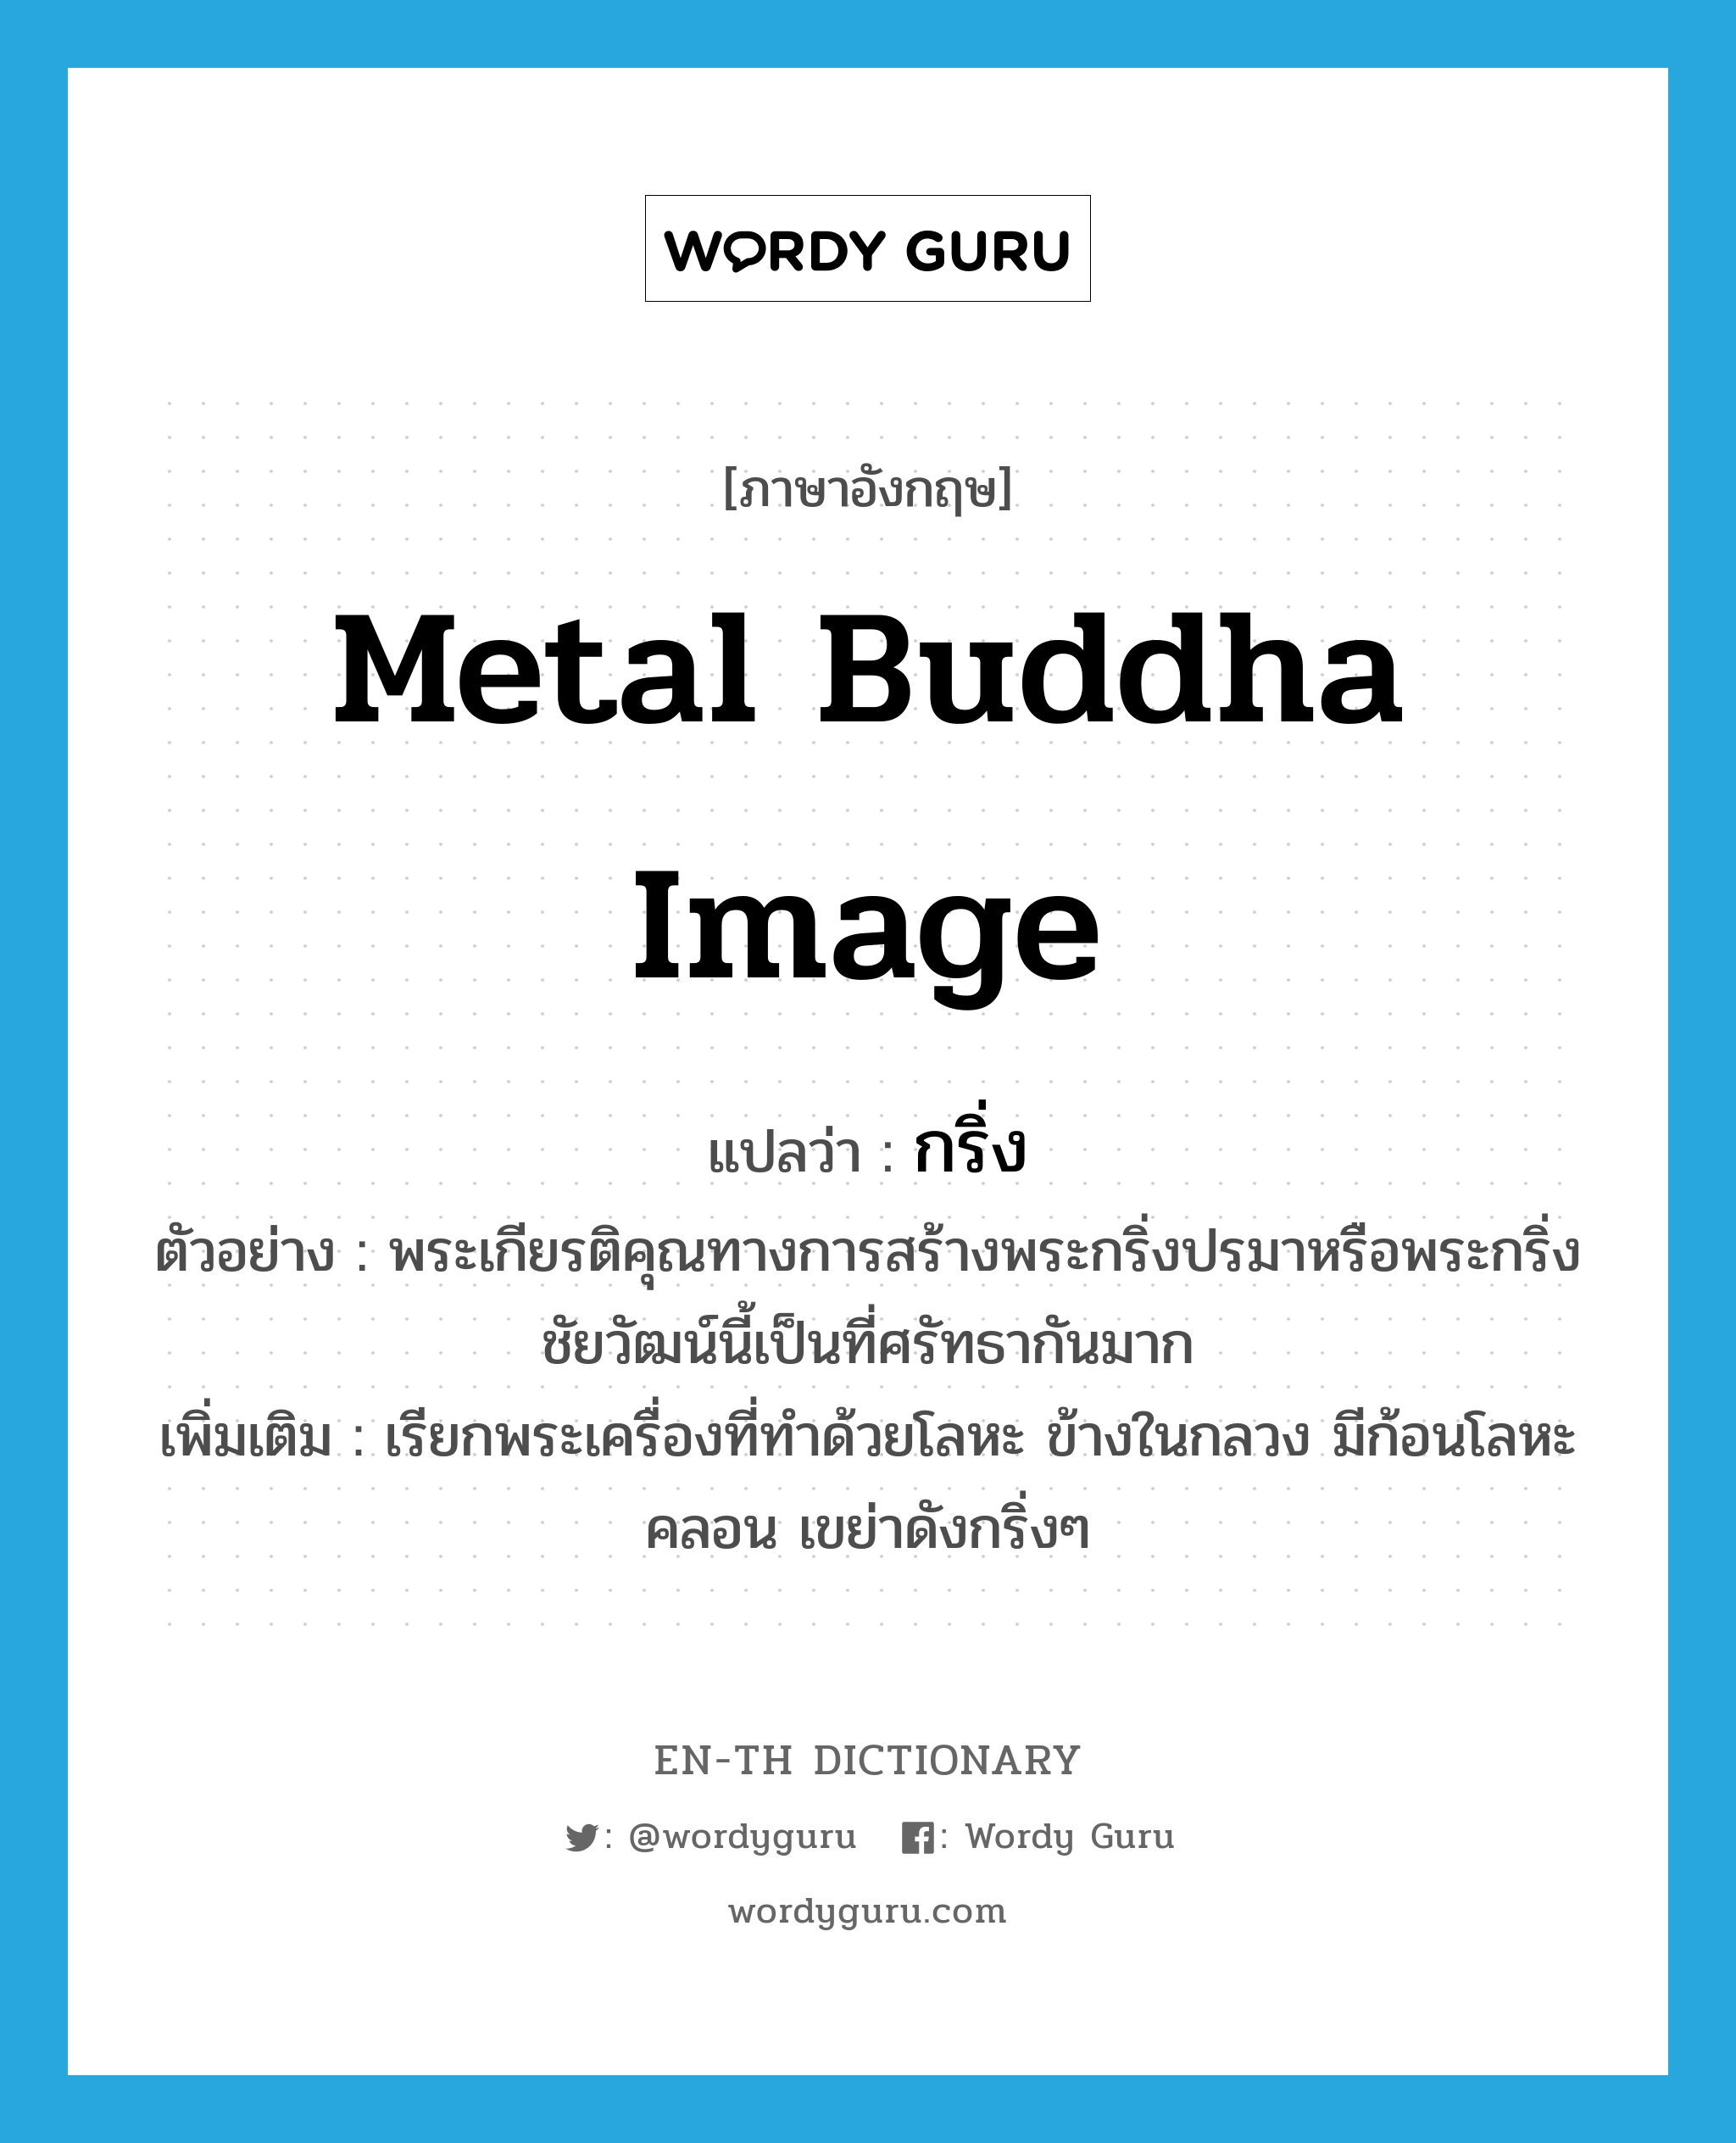 metal Buddha image แปลว่า?, คำศัพท์ภาษาอังกฤษ metal Buddha image แปลว่า กริ่ง ประเภท N ตัวอย่าง พระเกียรติคุณทางการสร้างพระกริ่งปรมาหรือพระกริ่งชัยวัฒน์นี้เป็นที่ศรัทธากันมาก เพิ่มเติม เรียกพระเครื่องที่ทำด้วยโลหะ ข้างในกลวง มีก้อนโลหะคลอน เขย่าดังกริ่งๆ หมวด N